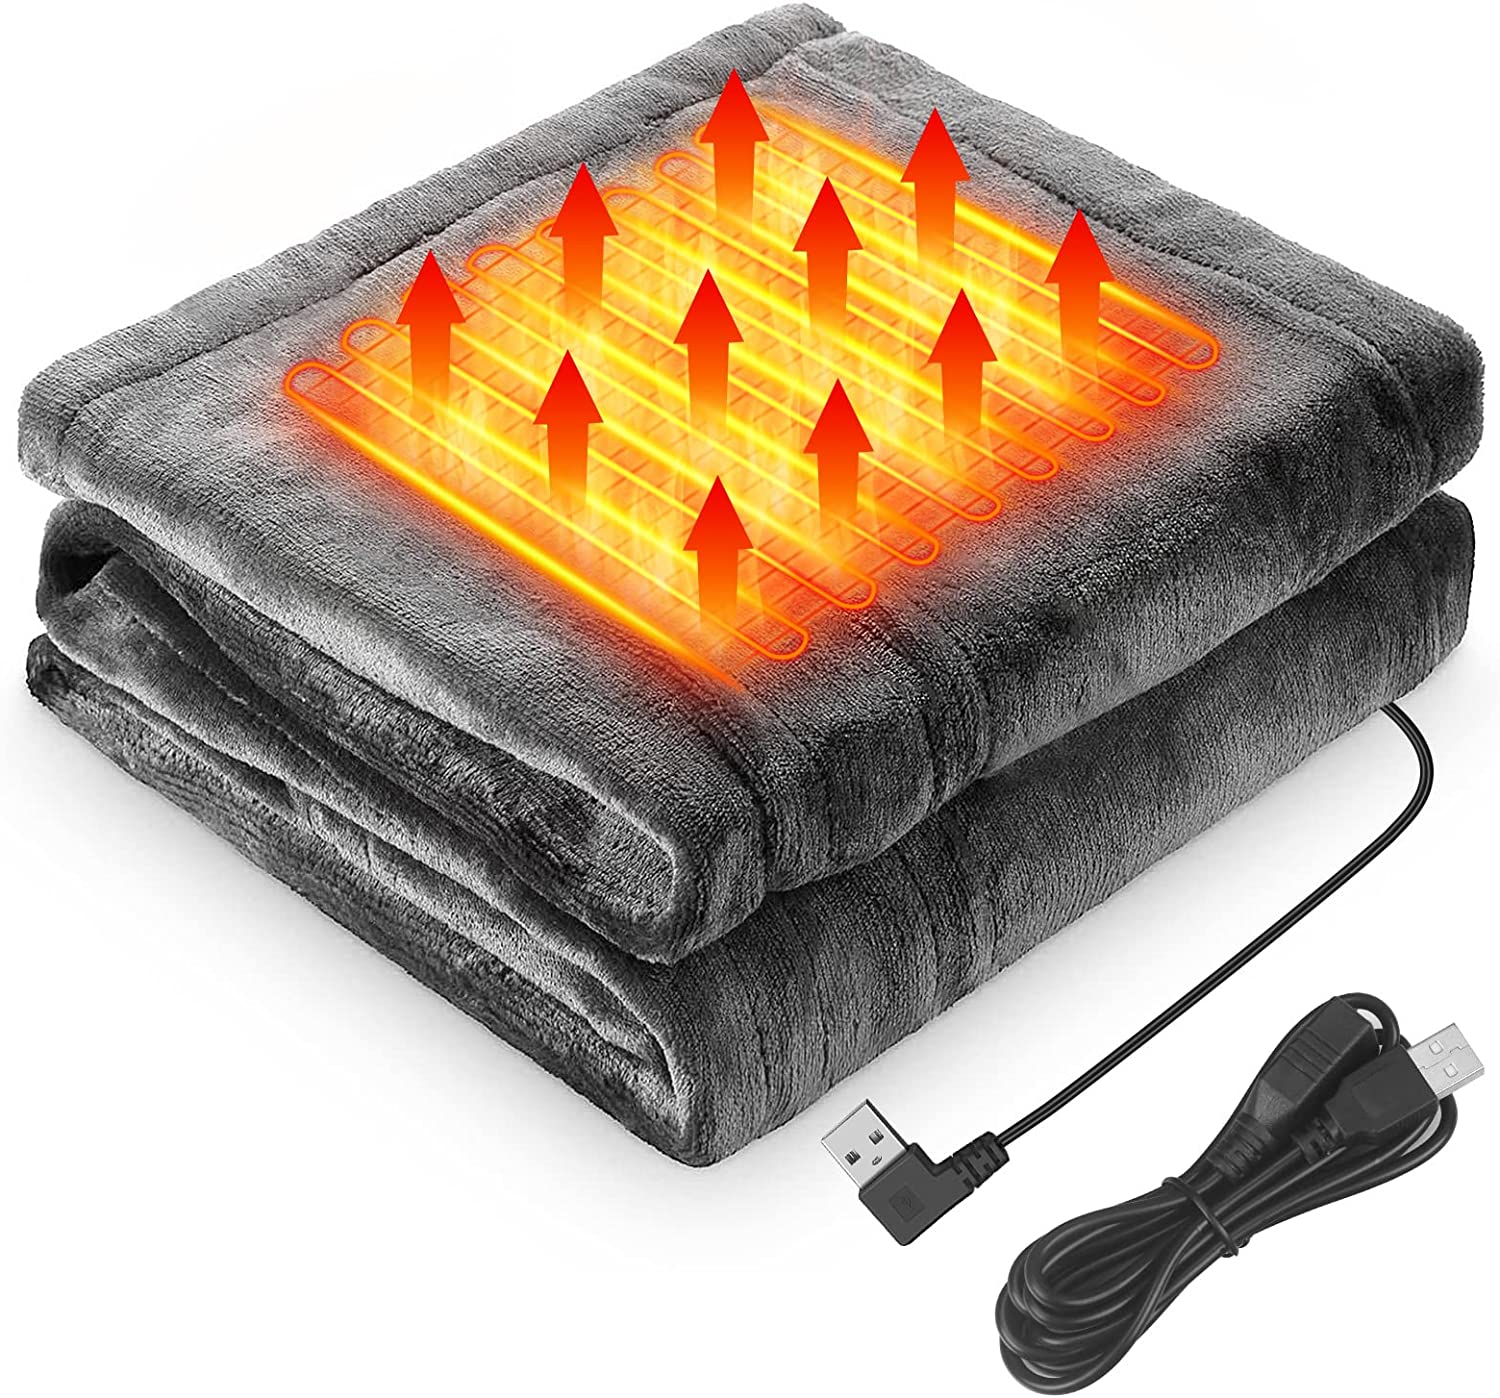 【商品説明】 【USB 電気毛布】サイズ：150*80cm、重さ：0.83kg、USB給電の電気毛布。8つの内蔵ヒーター、ヒーターサイズ：7 x 12 cmx 8個で、膝の保護だけでなく、肩にもかけられます。冷えやすい足をカバーできます。昼寝のために腰を温めるベッド毛布としても使えます。冬キャンプ、キャンプ、車、家、オフィスなどに最適です。 【3段温度調整】初めてUSBポートをモバイル電源に接続したら、赤と白の青ランプが順次点灯し、その後消灯します。その後、3秒のスイッチボタンを長押しすると、赤信号が点灯し、本製品は正常に動作します。3段階の温度は自由に調整でき、加熱モードは高温（赤）→中温度（白）→低温（青）の順に切り替わります。周囲の温度に合わせて加熱モードを調整でき、秋冬に最適です。 【USB給電、安全、使い勝手が簡単】電気毛布にUSBケーブルが付いています。電池（別途購入）と接続は使います。5 V-2 A以上の電源仕様に対応しており、市場上の95%の電源に対応していますので、電源の心配はありません。屋外での作業も心配ありません。低電圧給電（5 V/2 A）は、使用時に非常に安全ですので、安心してご使用ください。操作はとても簡単です。 【手触りが柔らかい・洗える】男女兼用の電気毛布は、ふわふわとした感触と暖かさに包まれた快適な毛布です。防水スイッチとモジュールを使って直接水洗いします。洗濯時はUSBケーブルをポケットに入れて洗浄してください。手洗いをおすすめします。